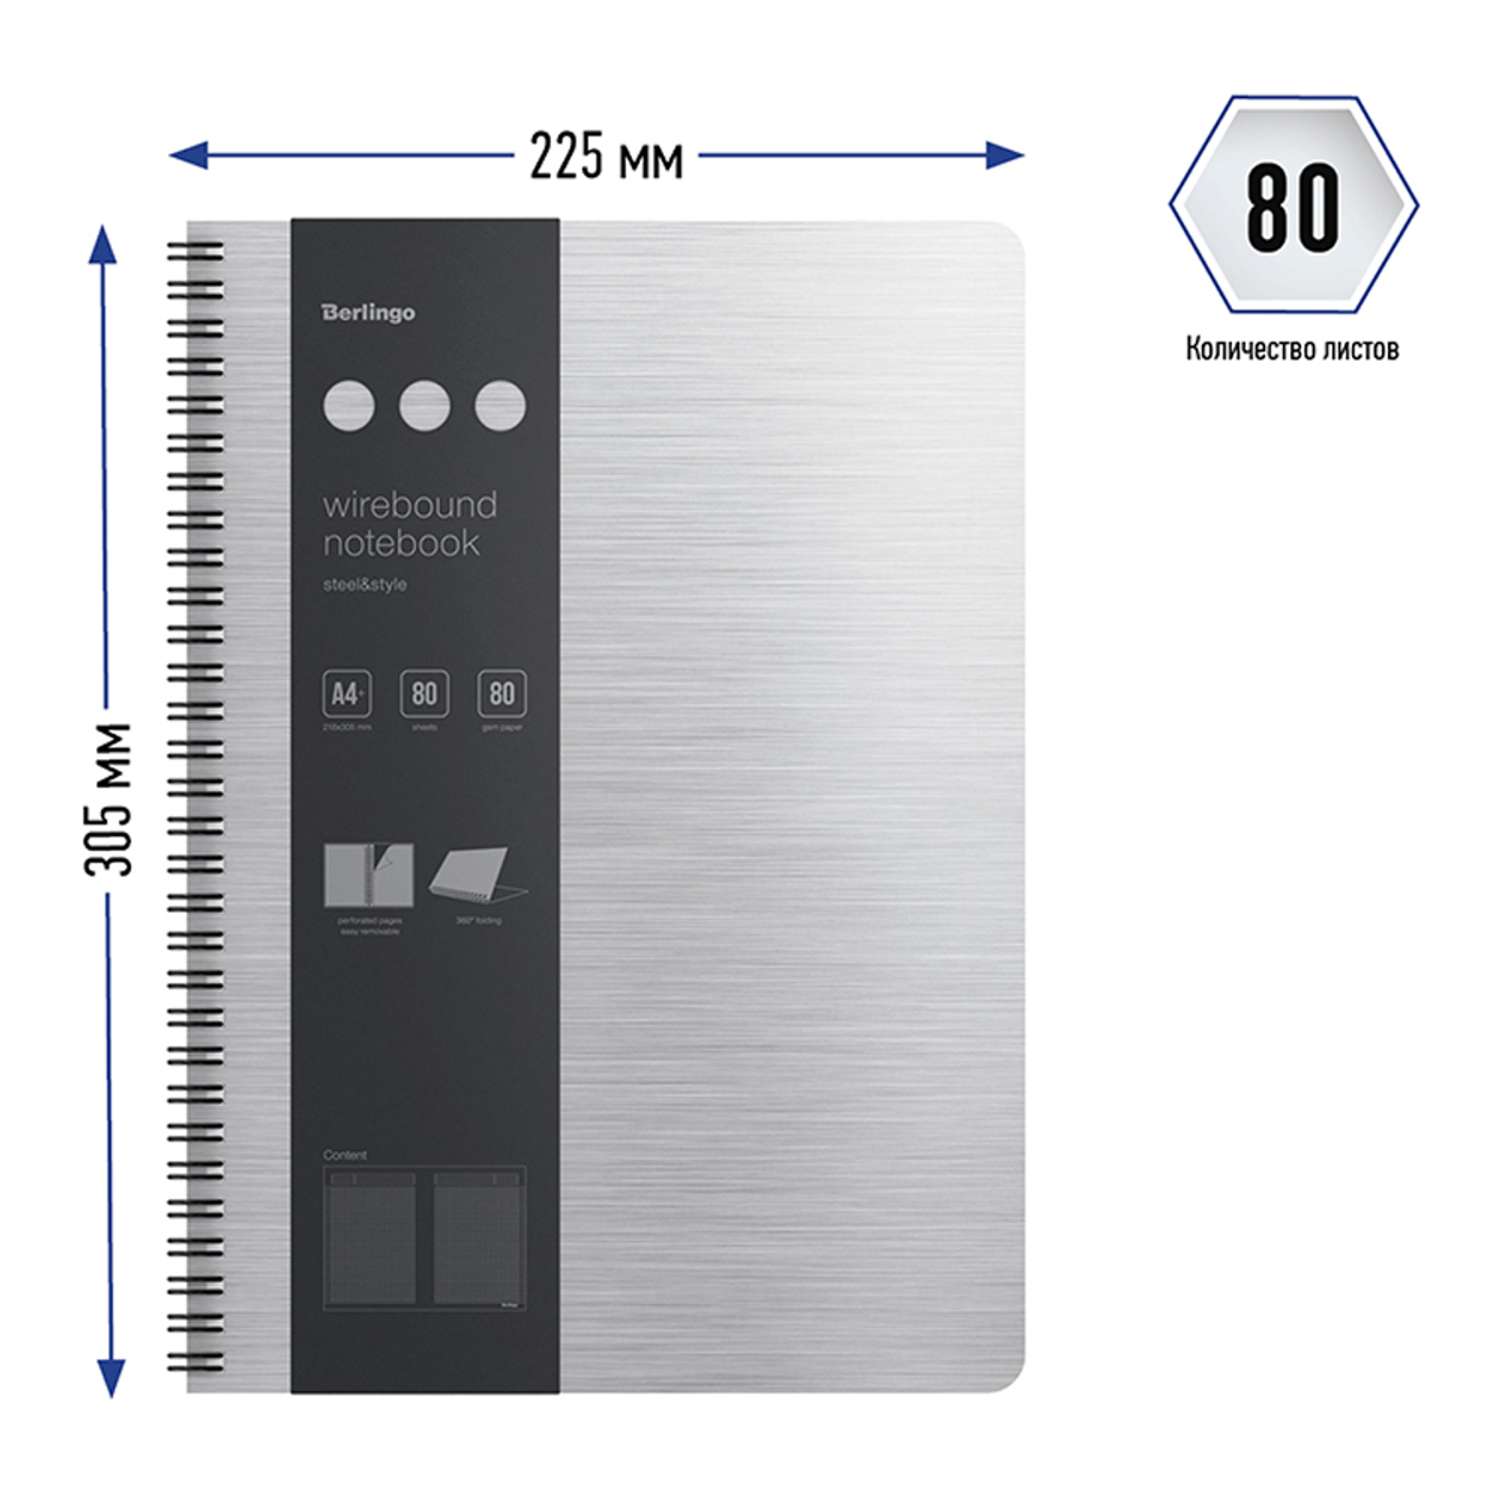 Бизнес-тетрадь Berlingo А4+ 80 листов Steel amp Style клетка на гребне пластиковая обложка линейка-закладка - фото 5